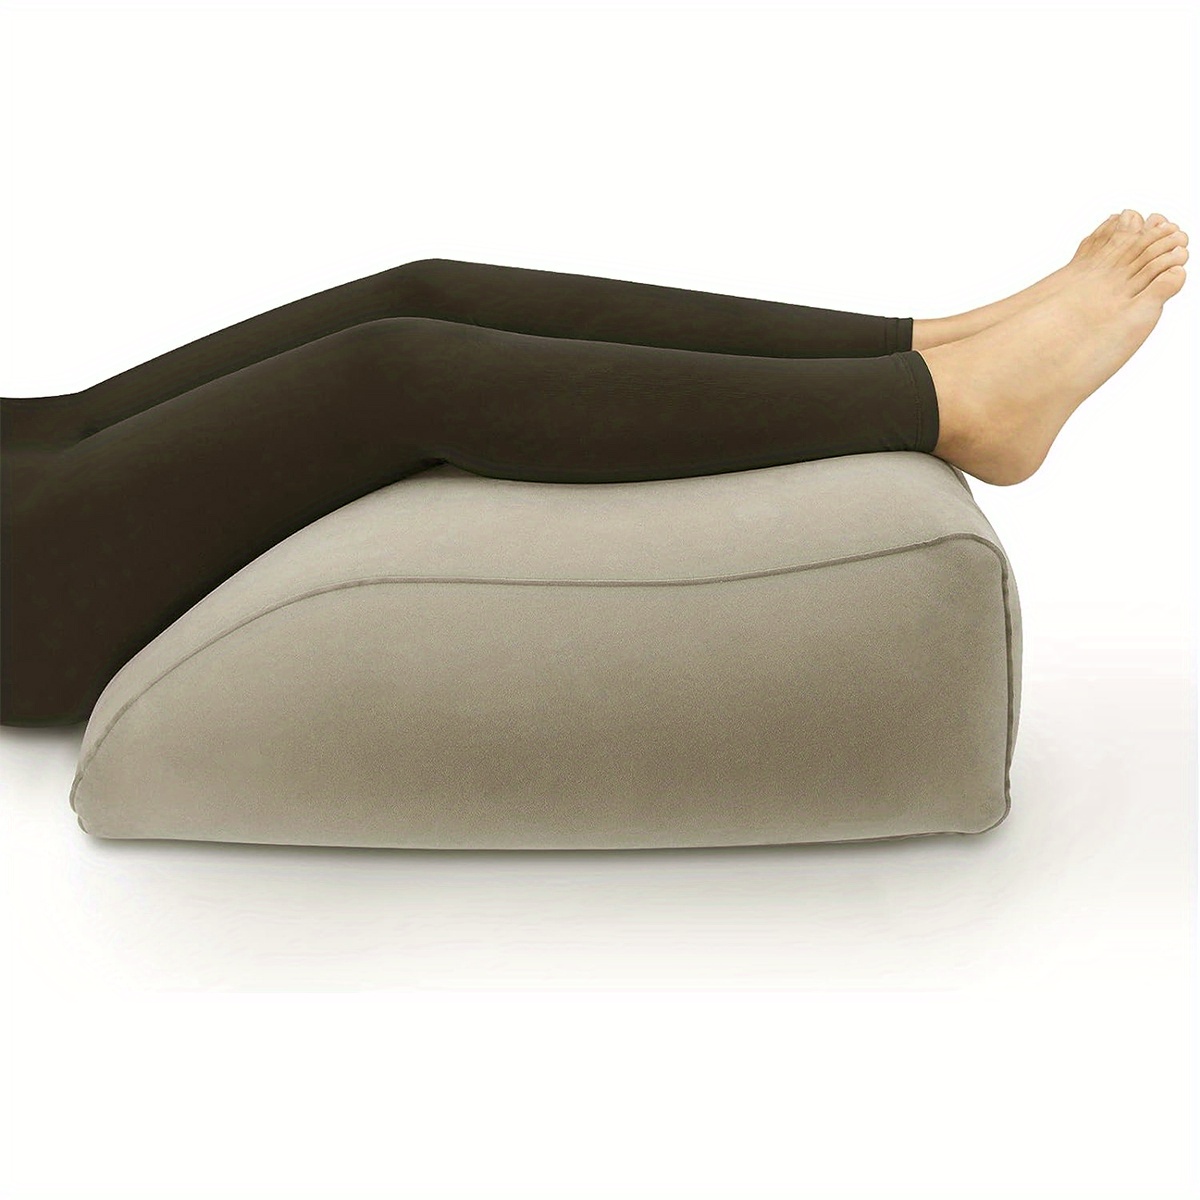 Leg Elevation Pillow Inflatable Wedge Pillows Comfort Leg Pillows